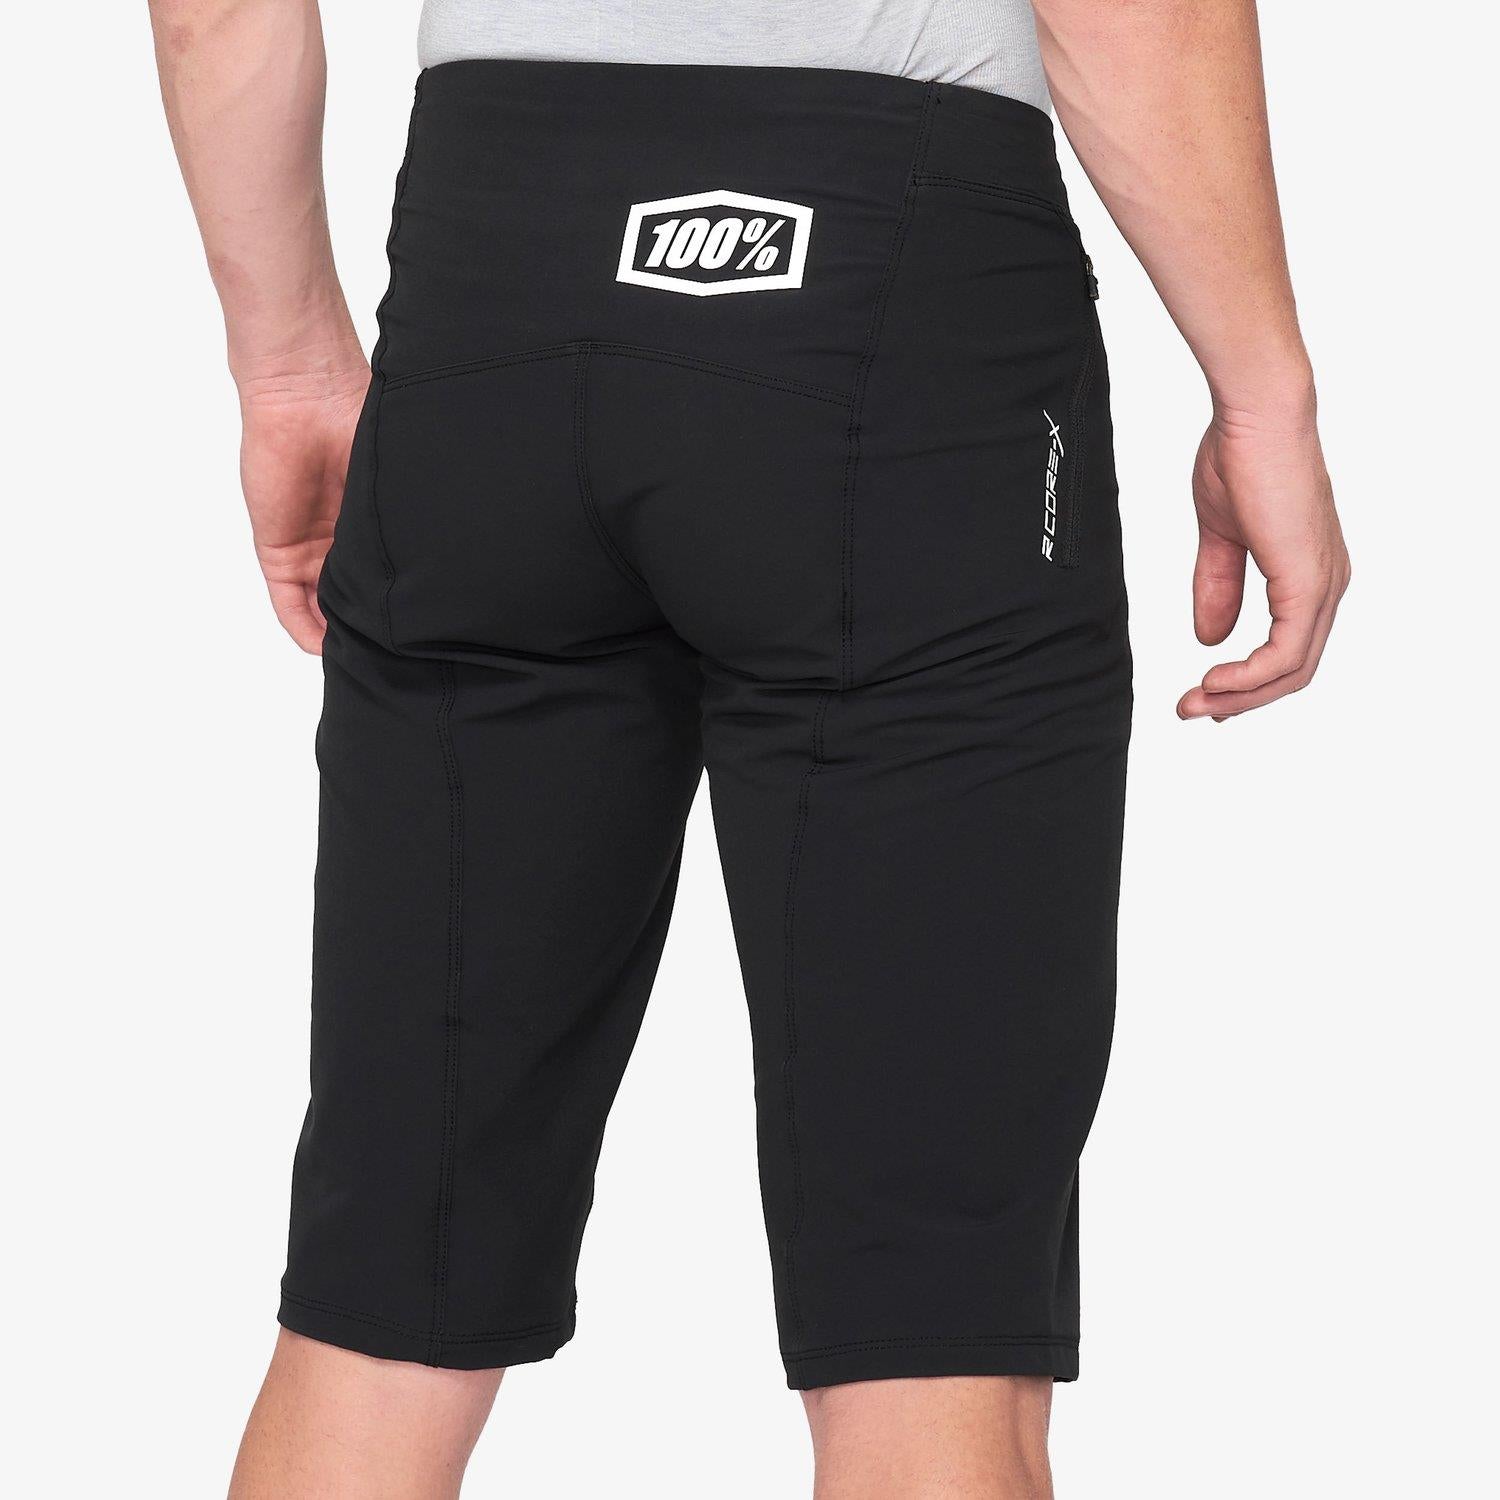 100% R-Core x Shorts de course - Noir